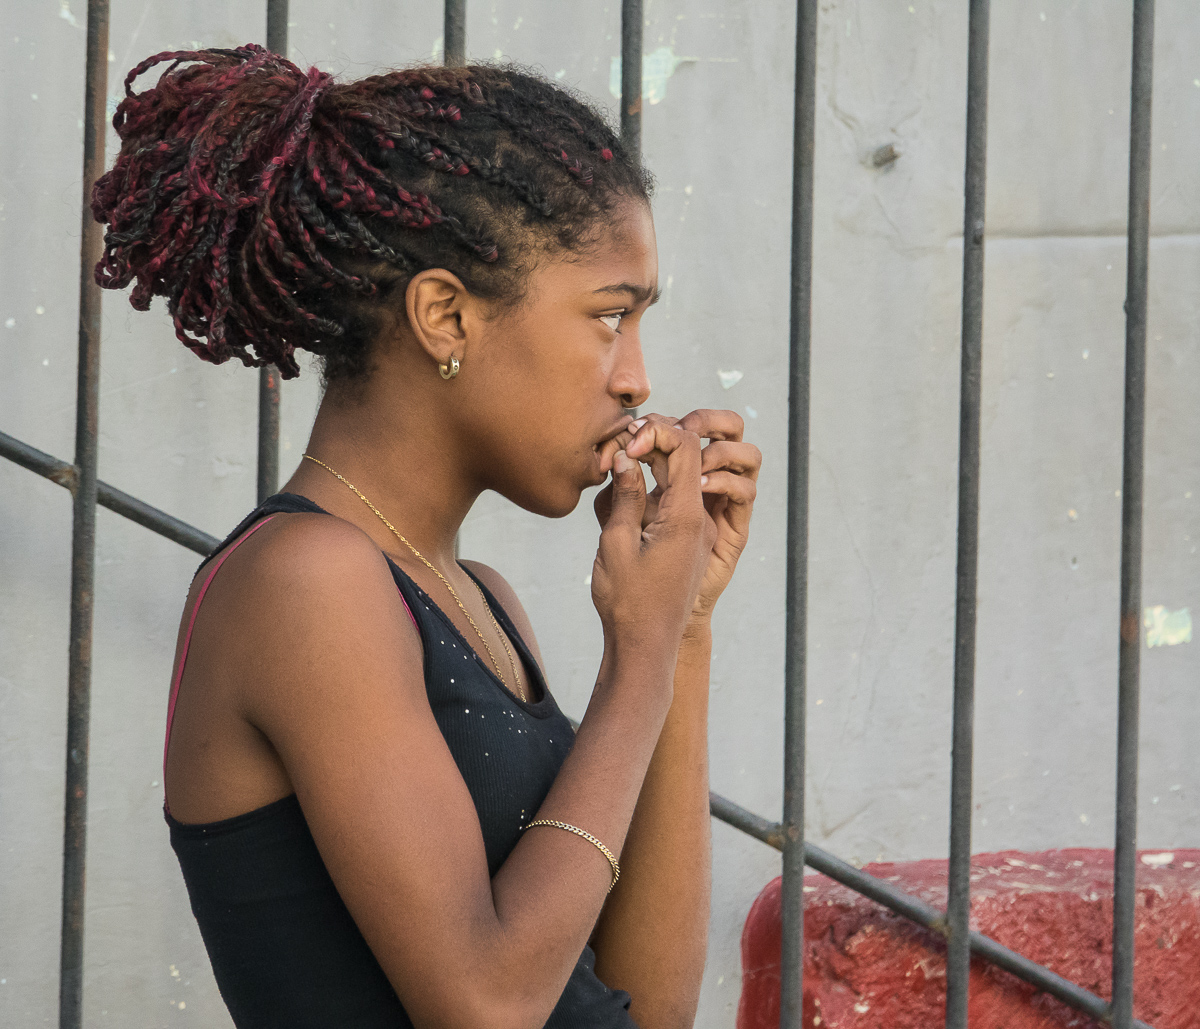 Young woman in Havana